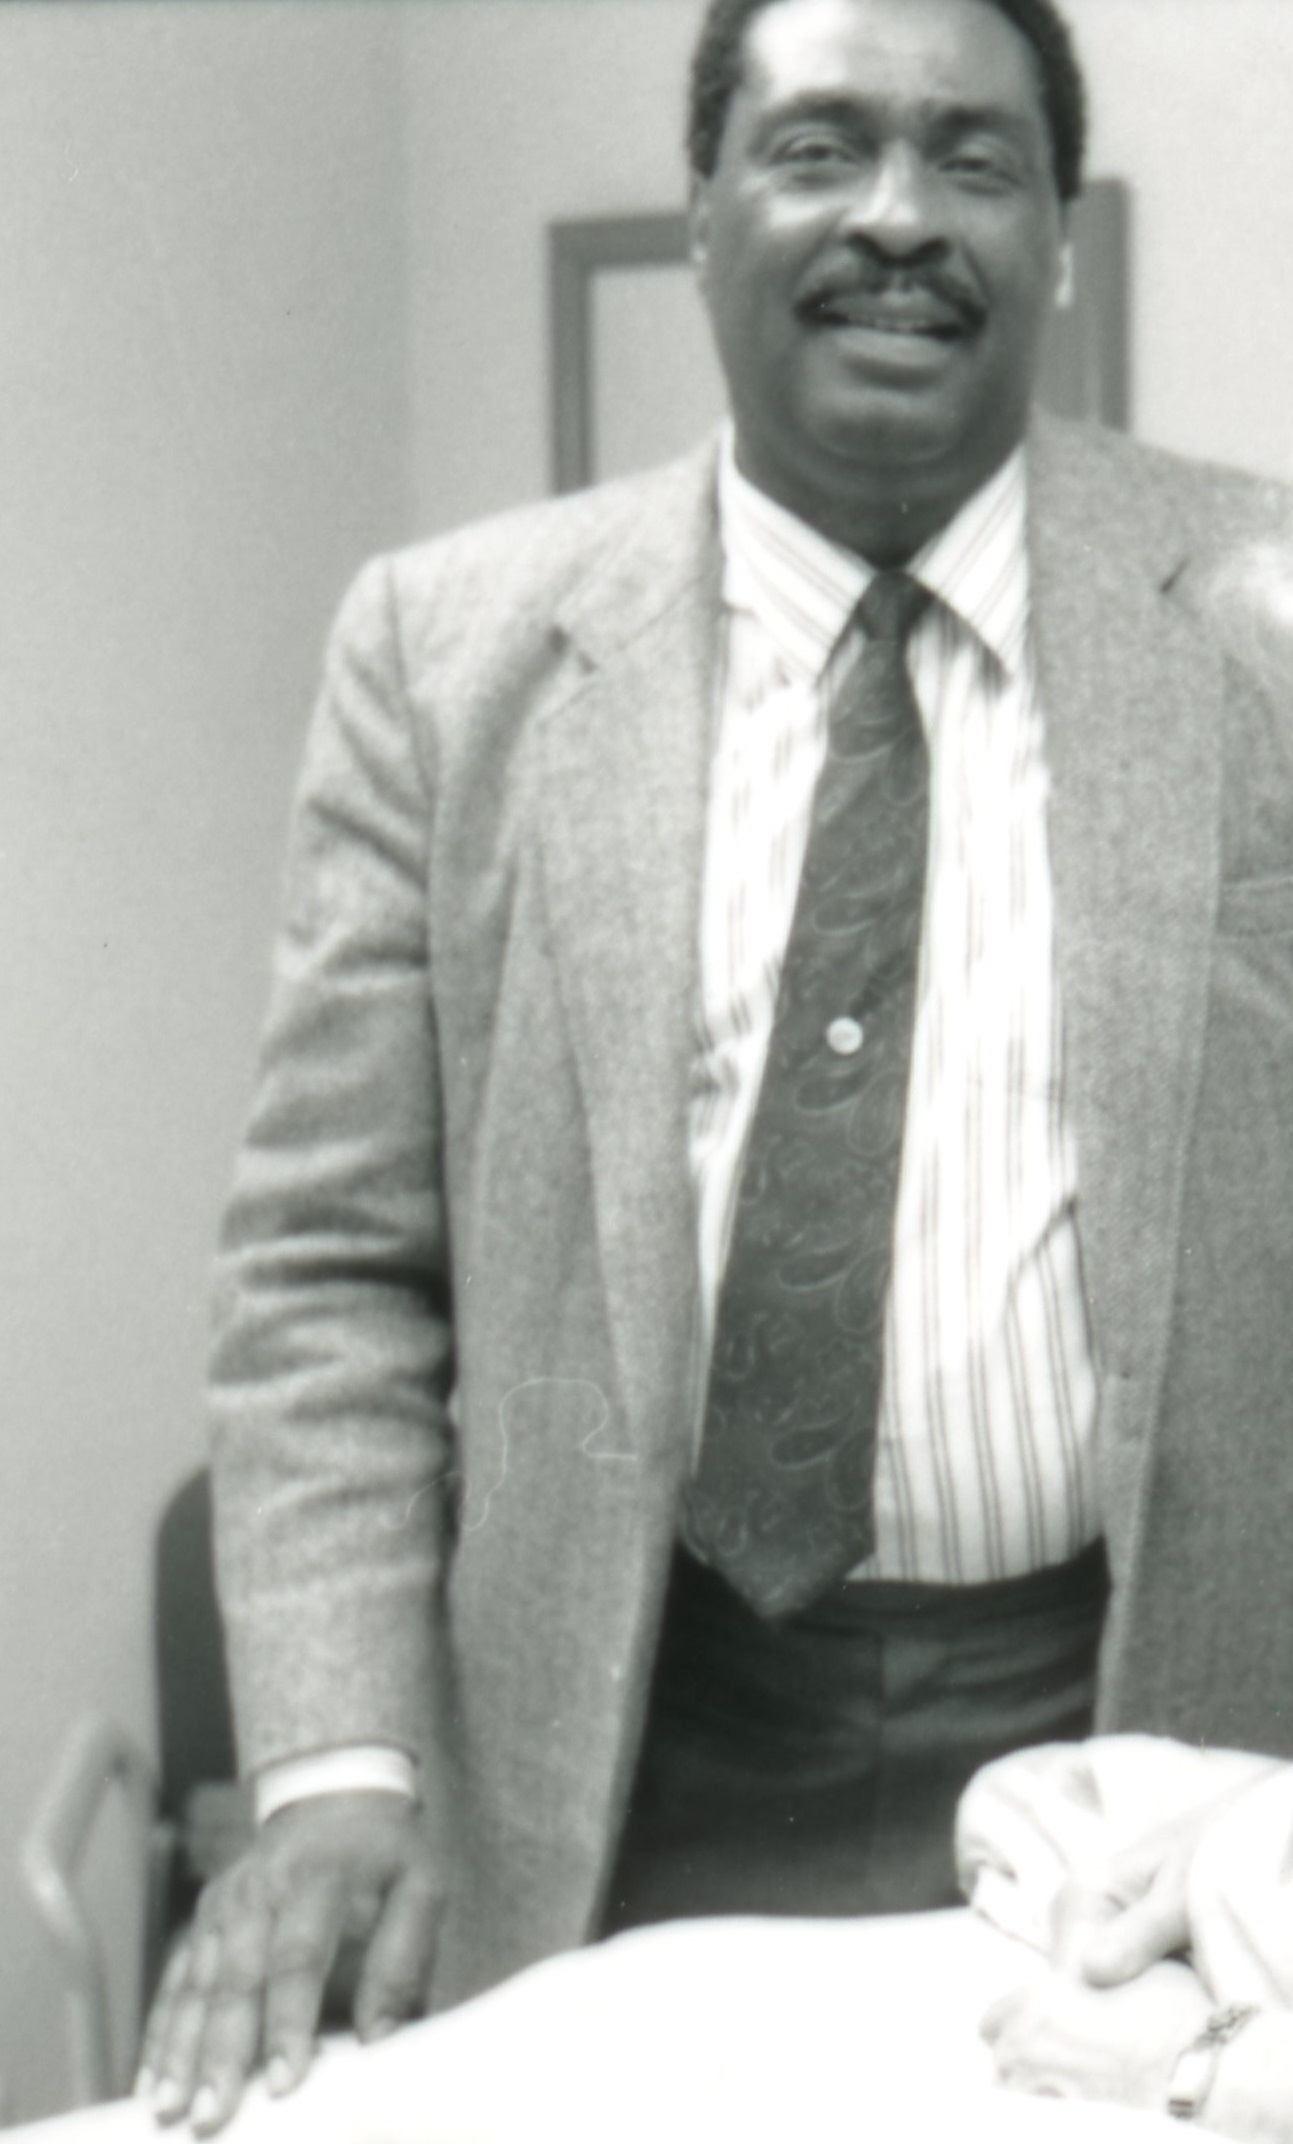 Robert Allen Jr. in hospital, David Powers collection, 1990-1991